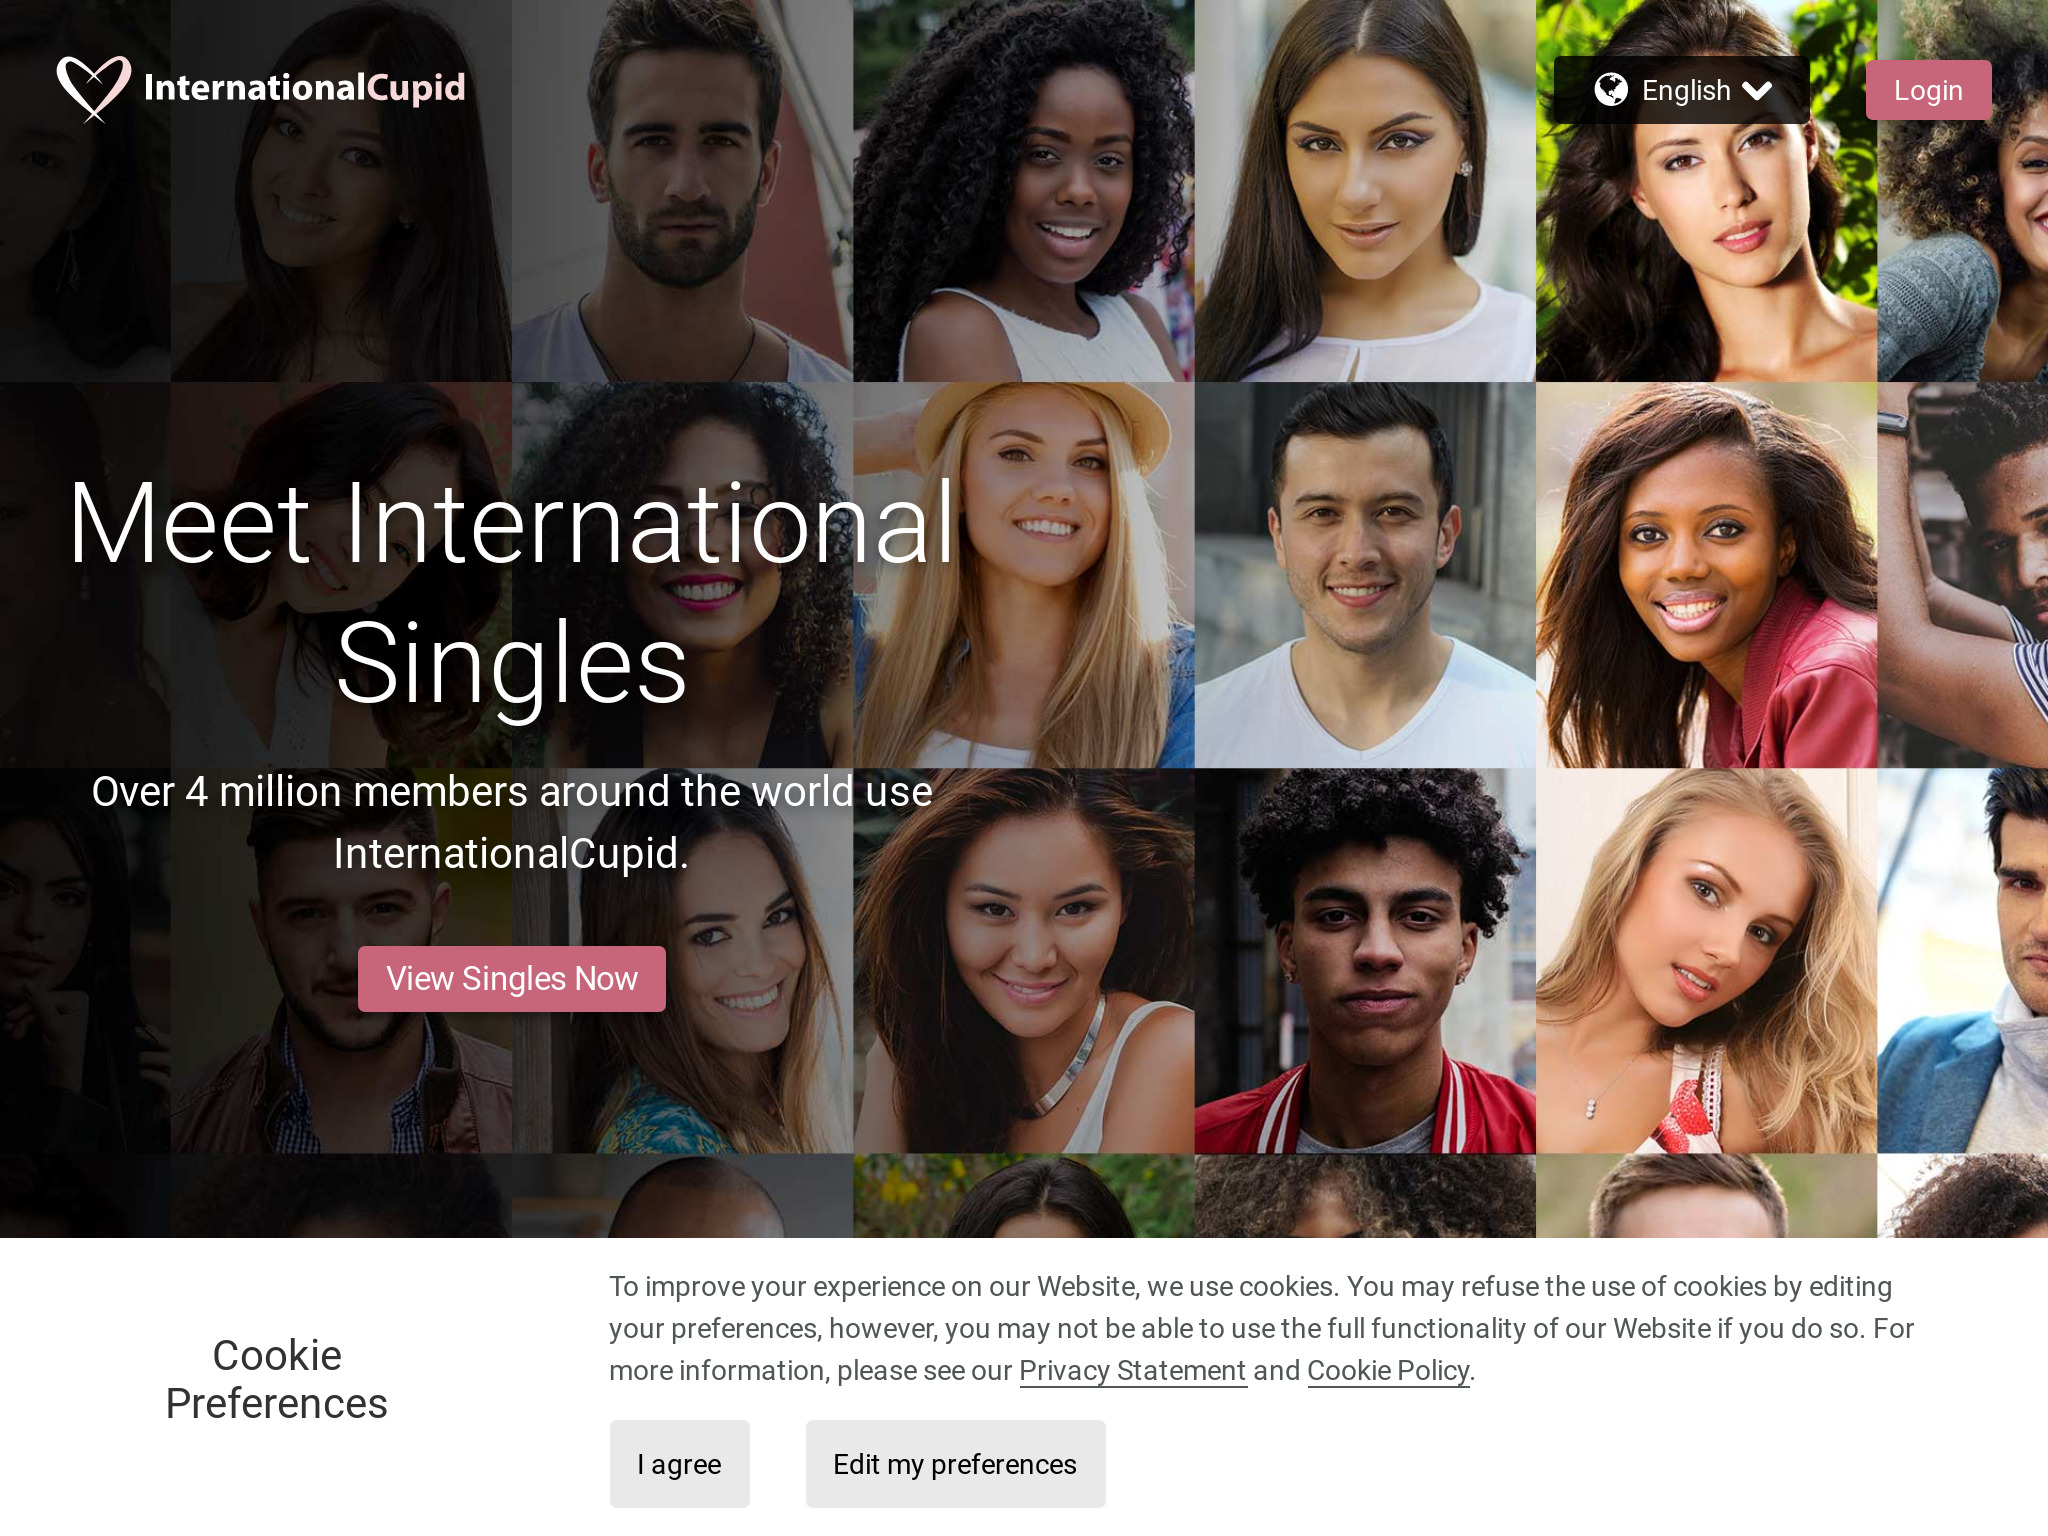 Revisión de InternationalCupid: ¿Es seguro y confiable?